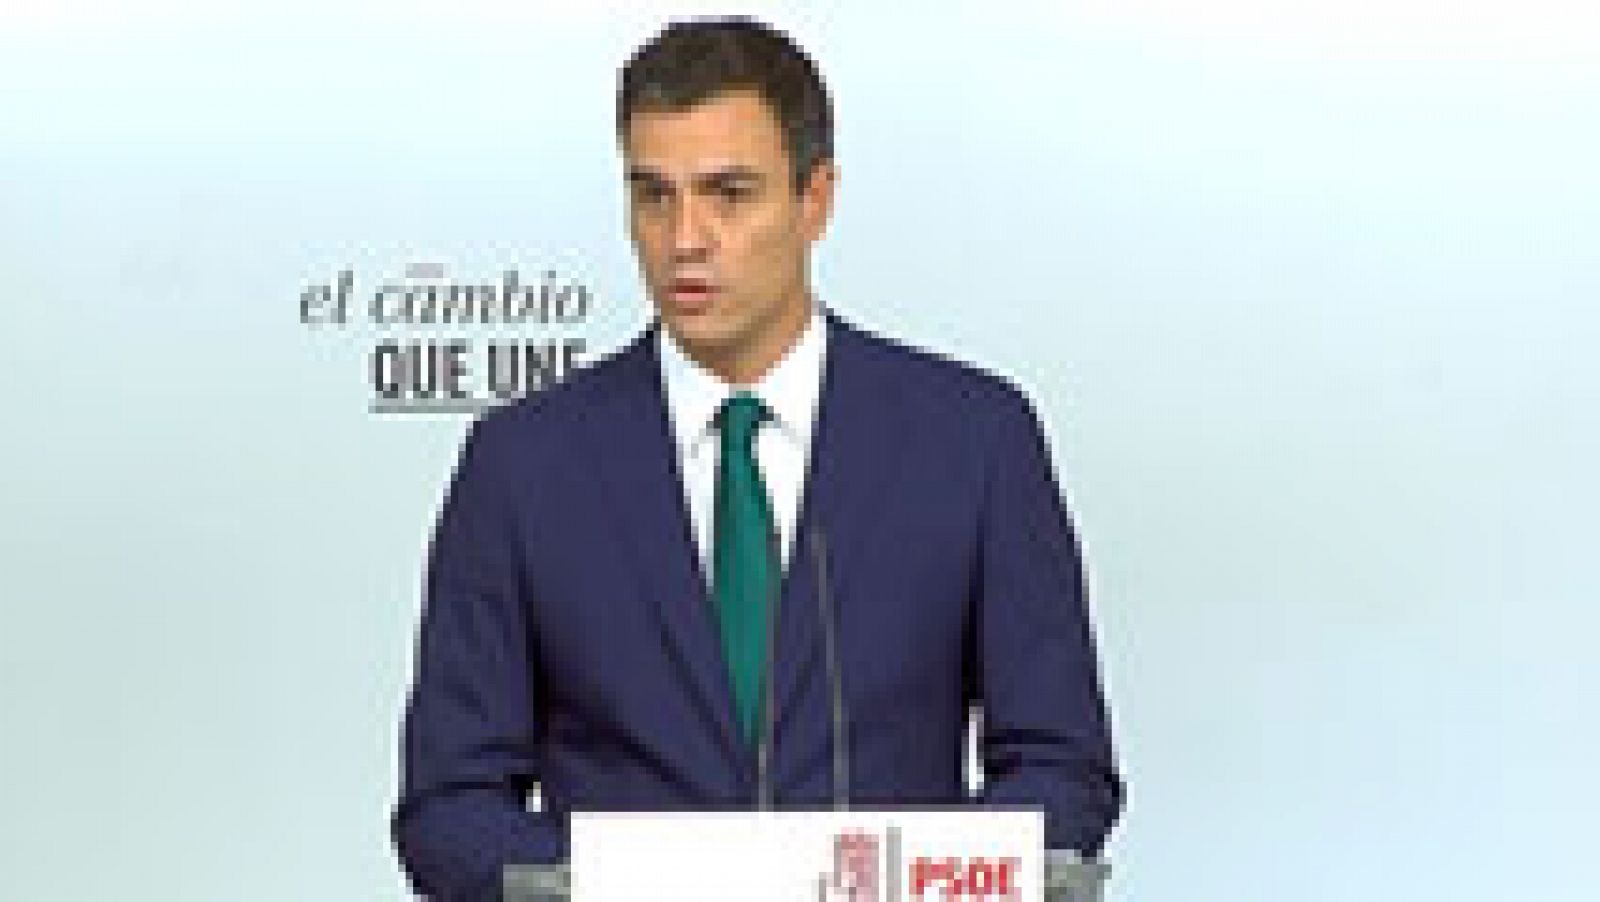 Pedro Sánchez apoya al Gobierno ante una moción que "traiciona la voluntad de la mayoría de los catalanes"